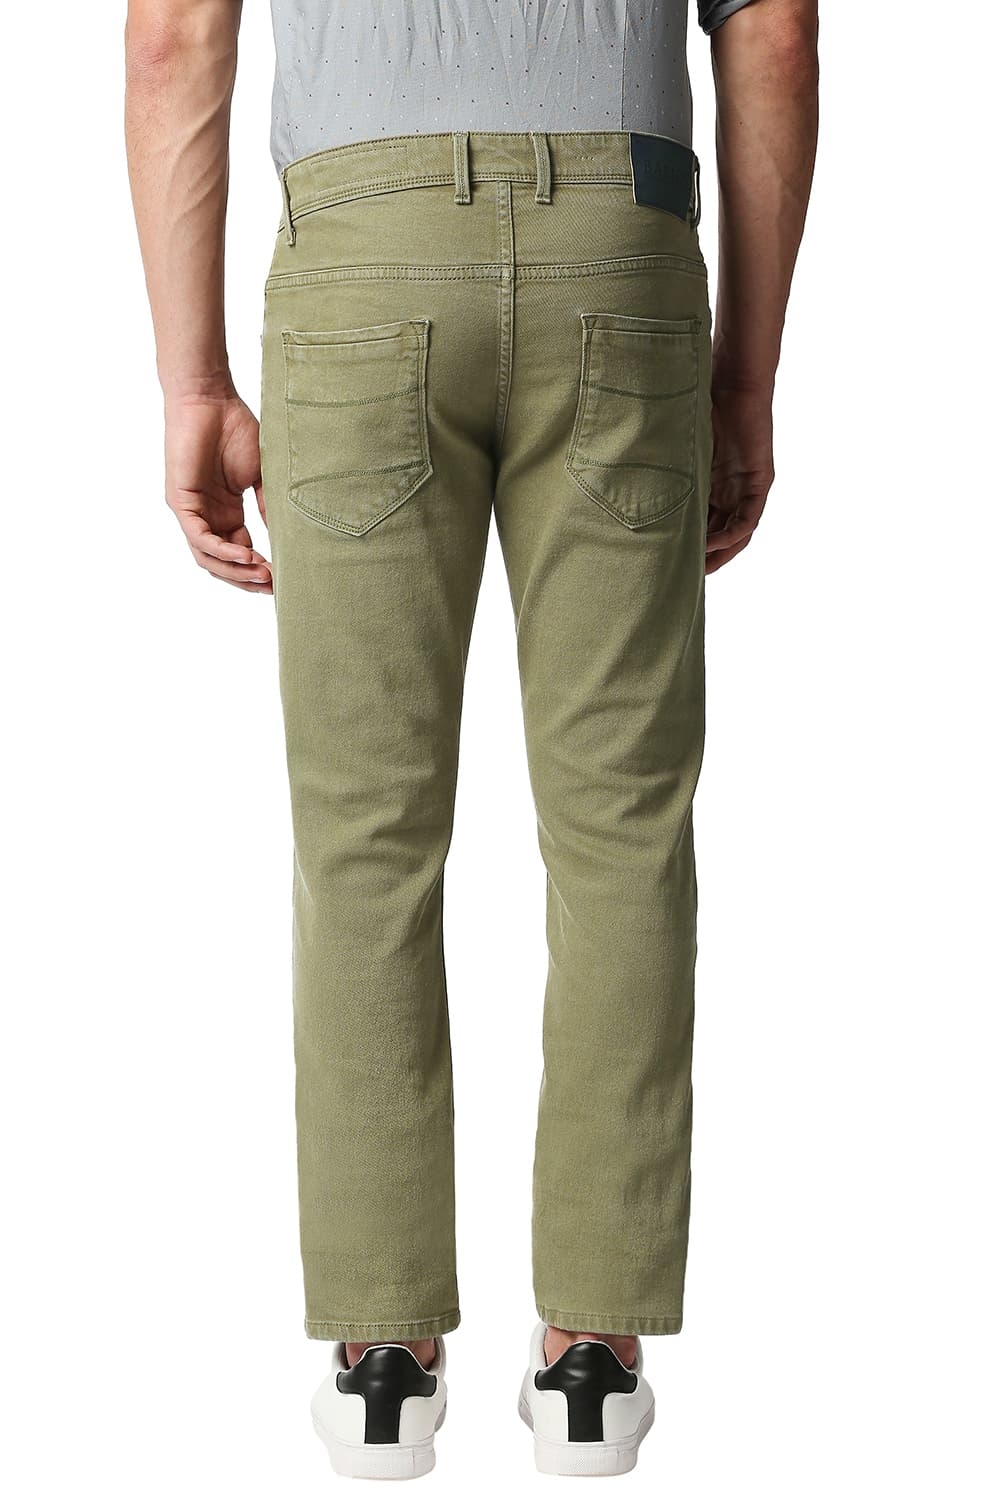 Basics | Men's Olive Cotton Blend Solid Jeans 1